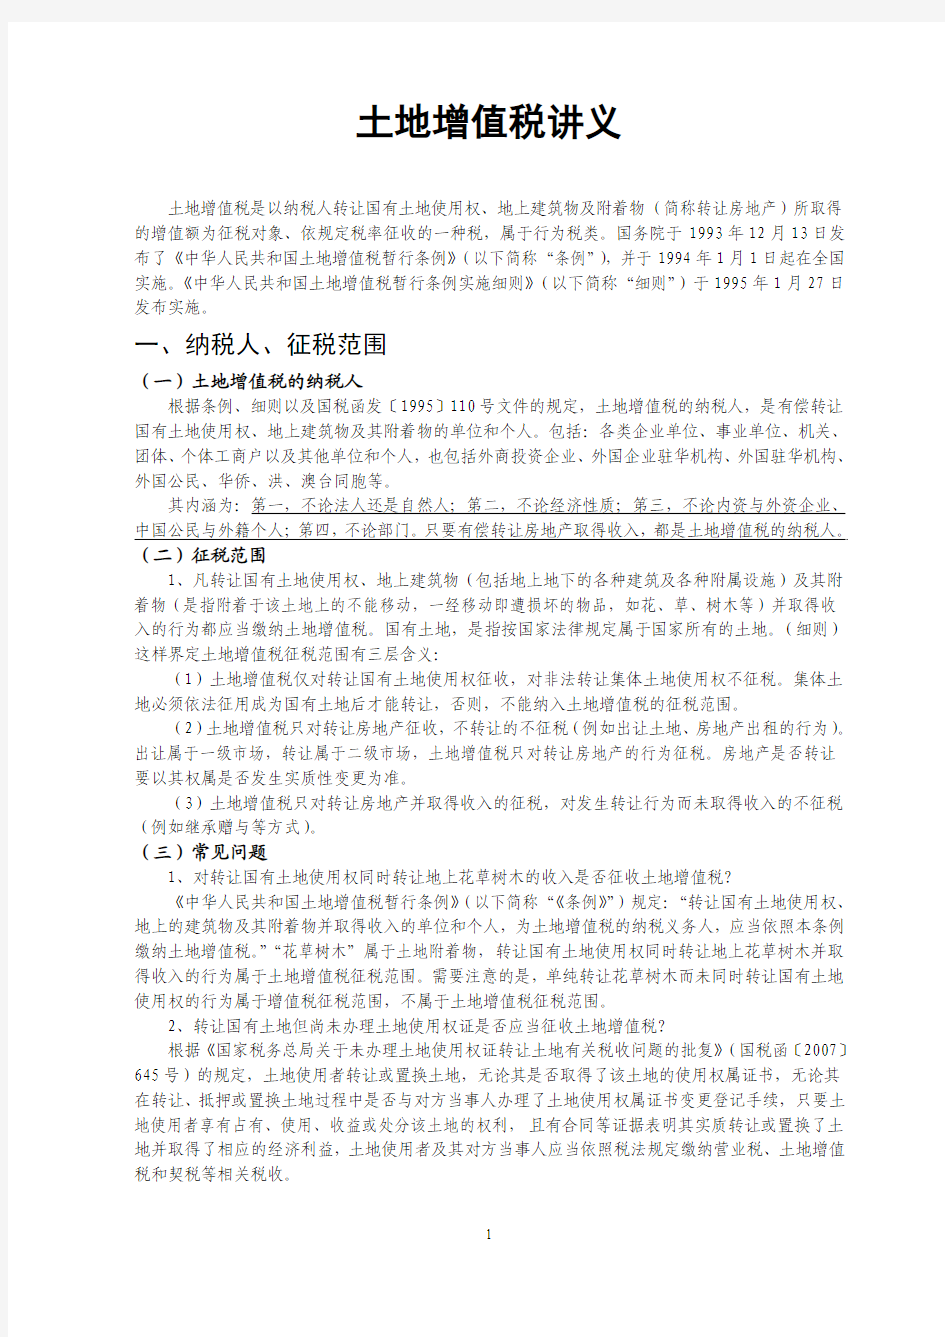 土地增值税讲义(2013.08.22)